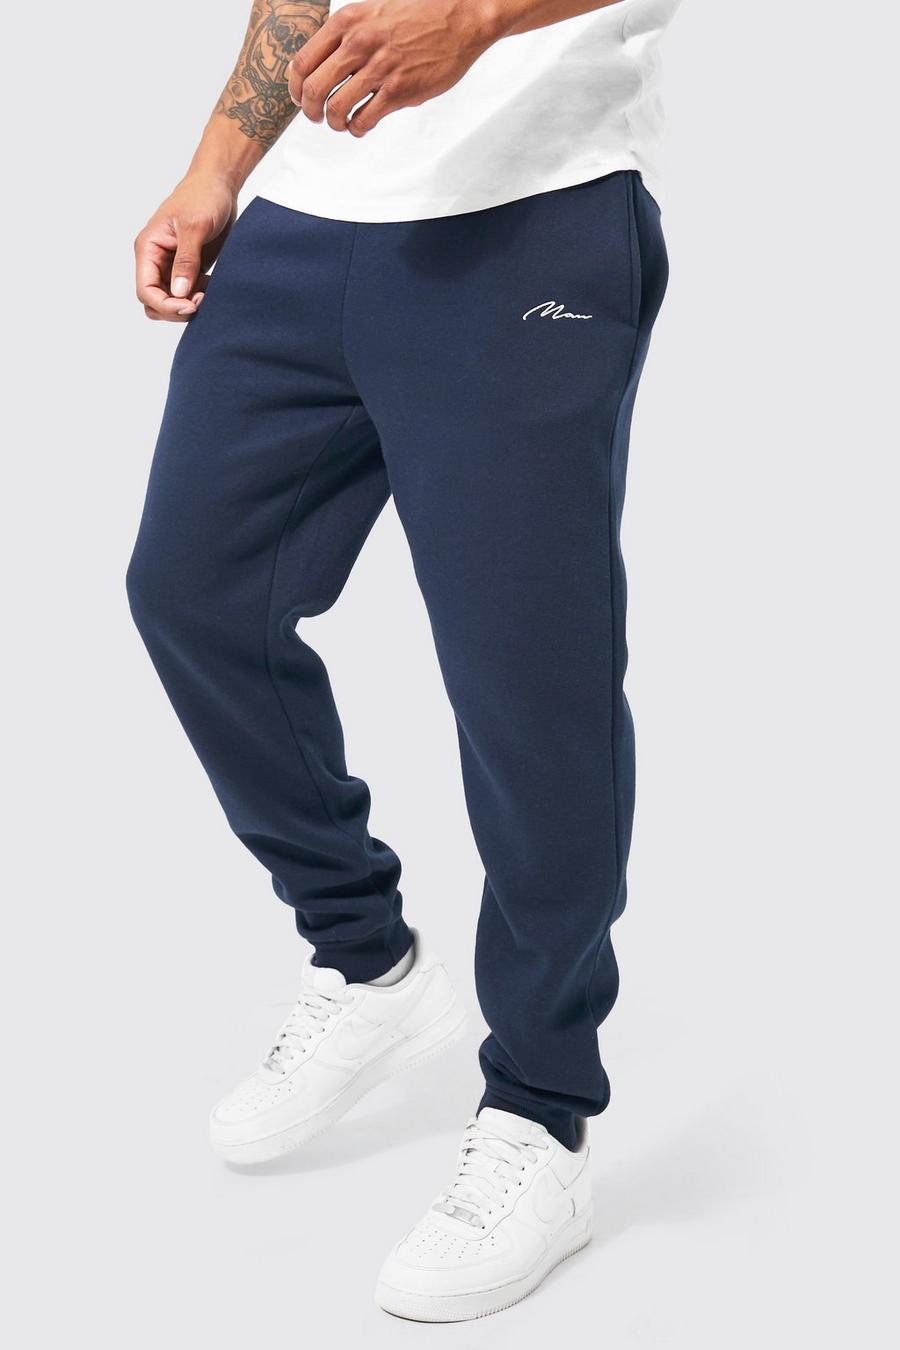 Pantalón deportivo ajustado con firma MAN, Navy blu oltremare